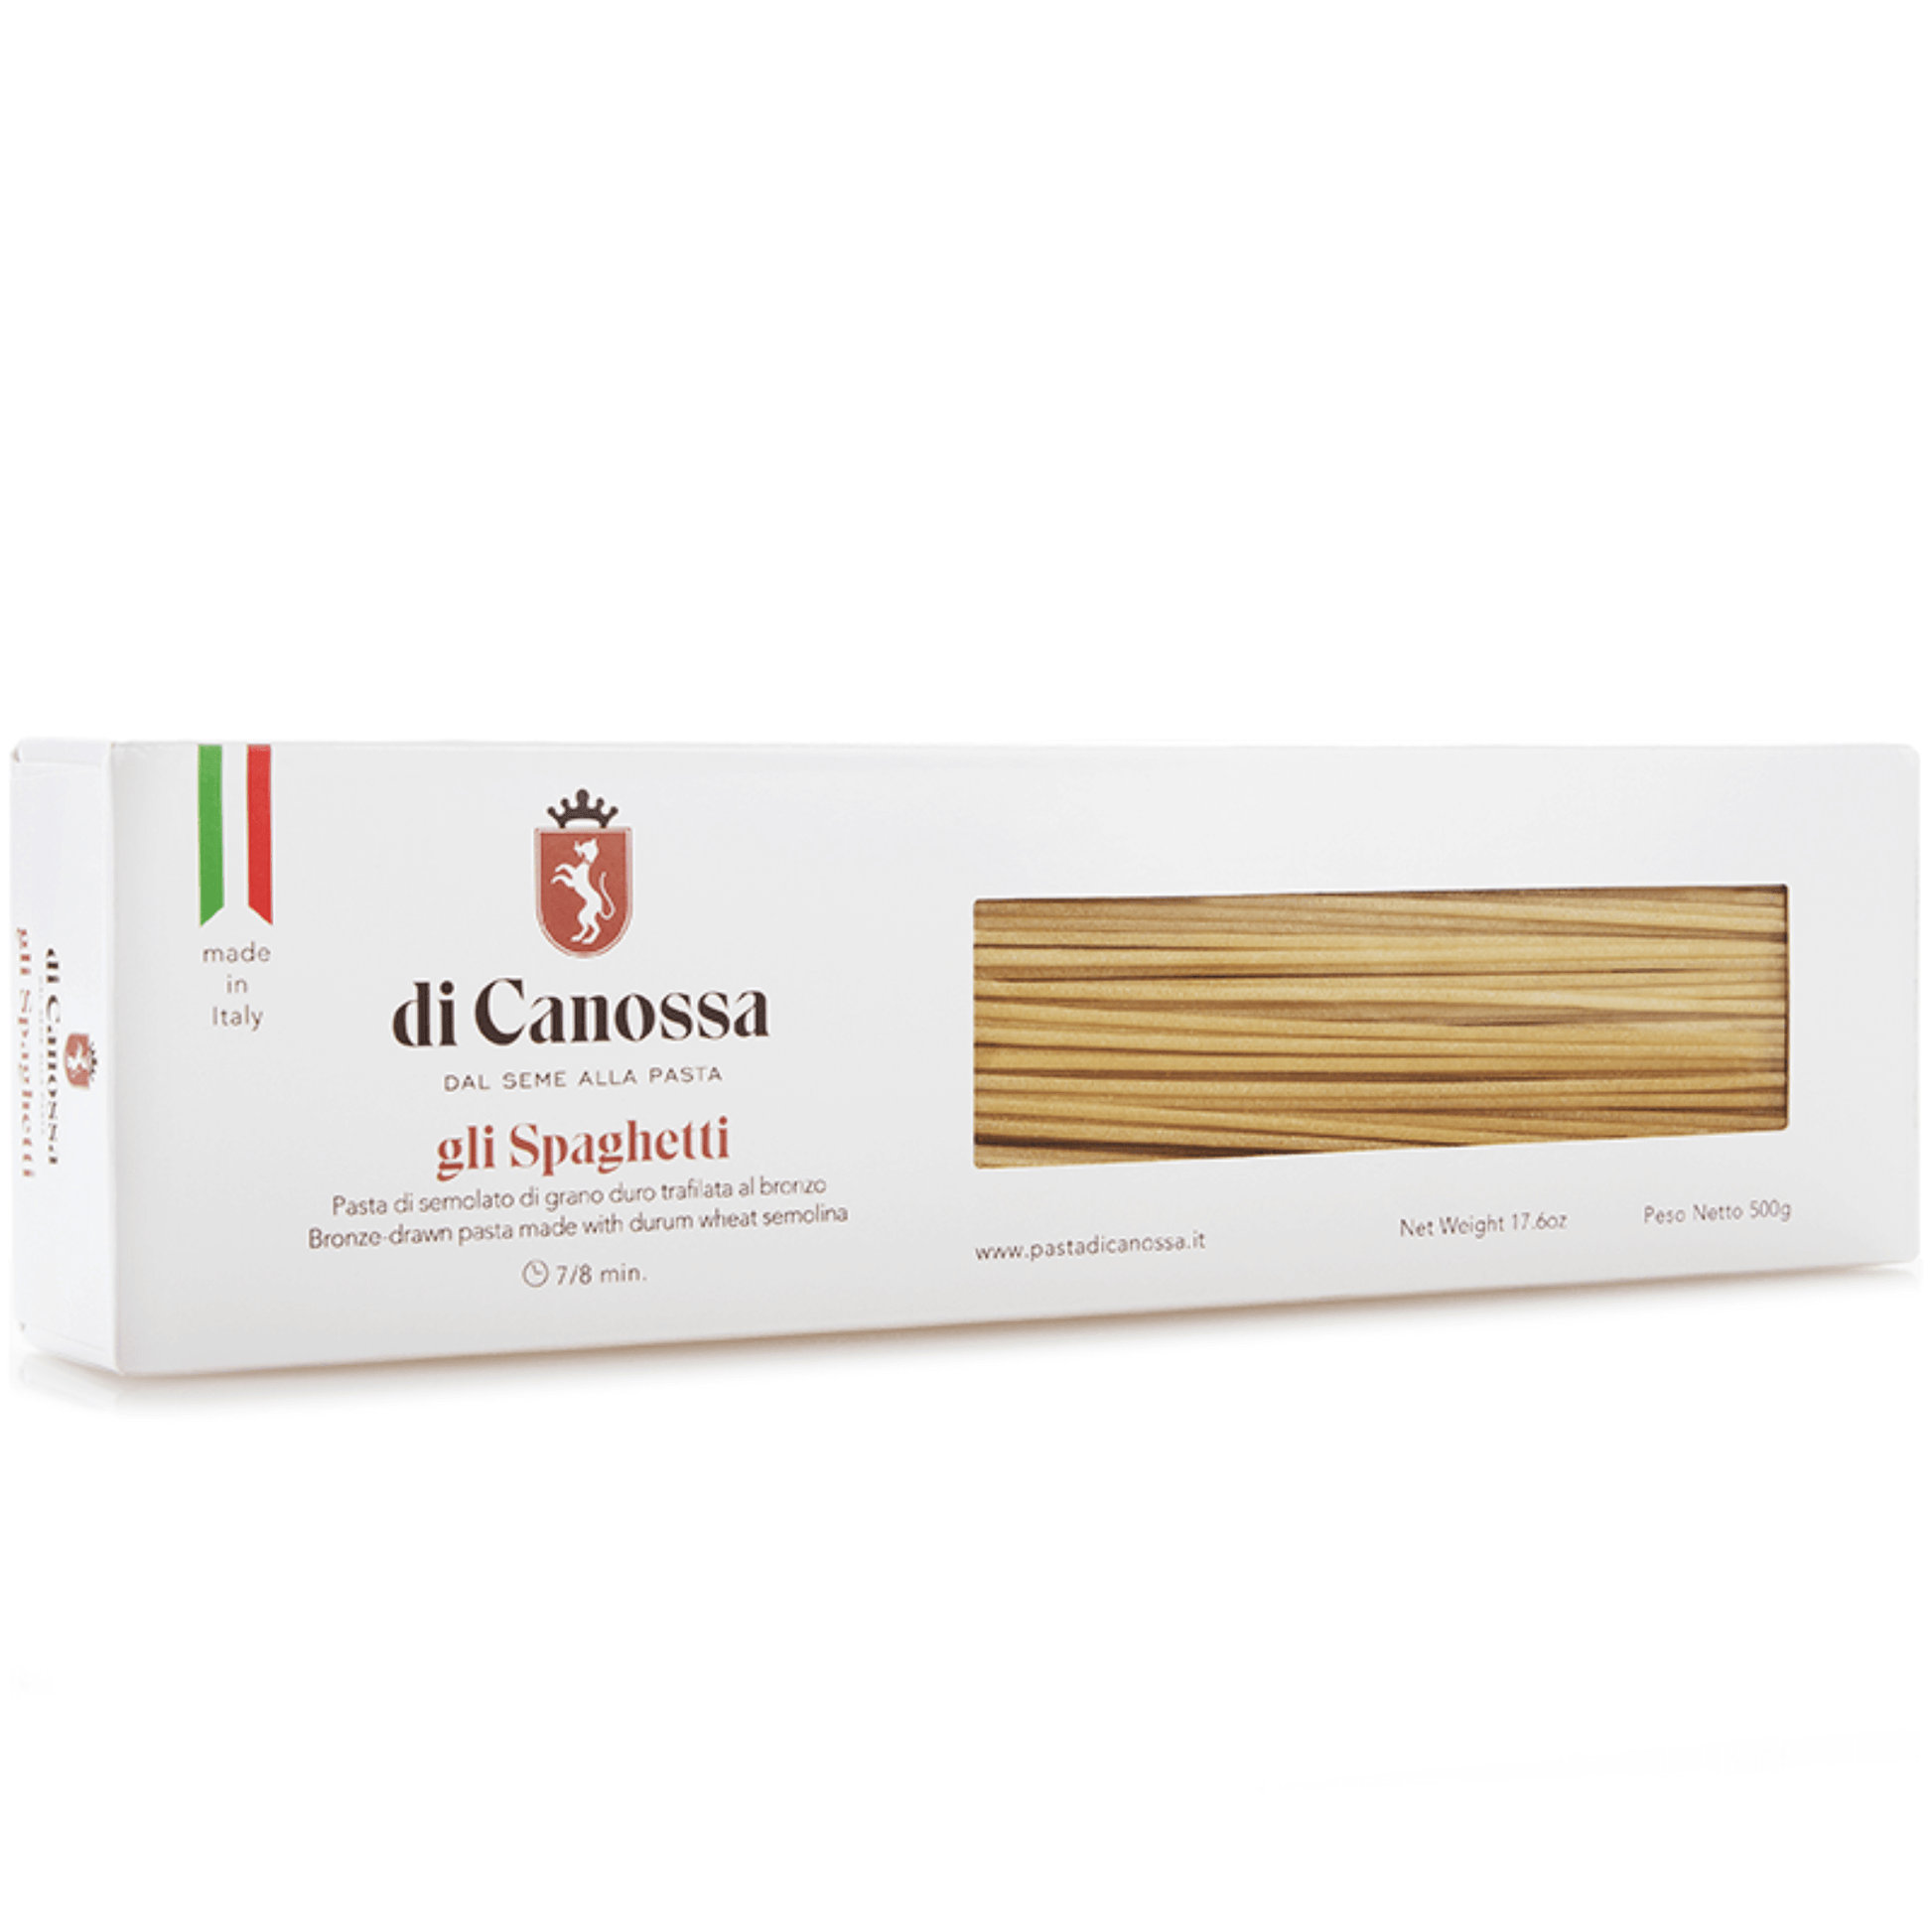 Spaghetti in confezione da 500 g pasta di Canossa.